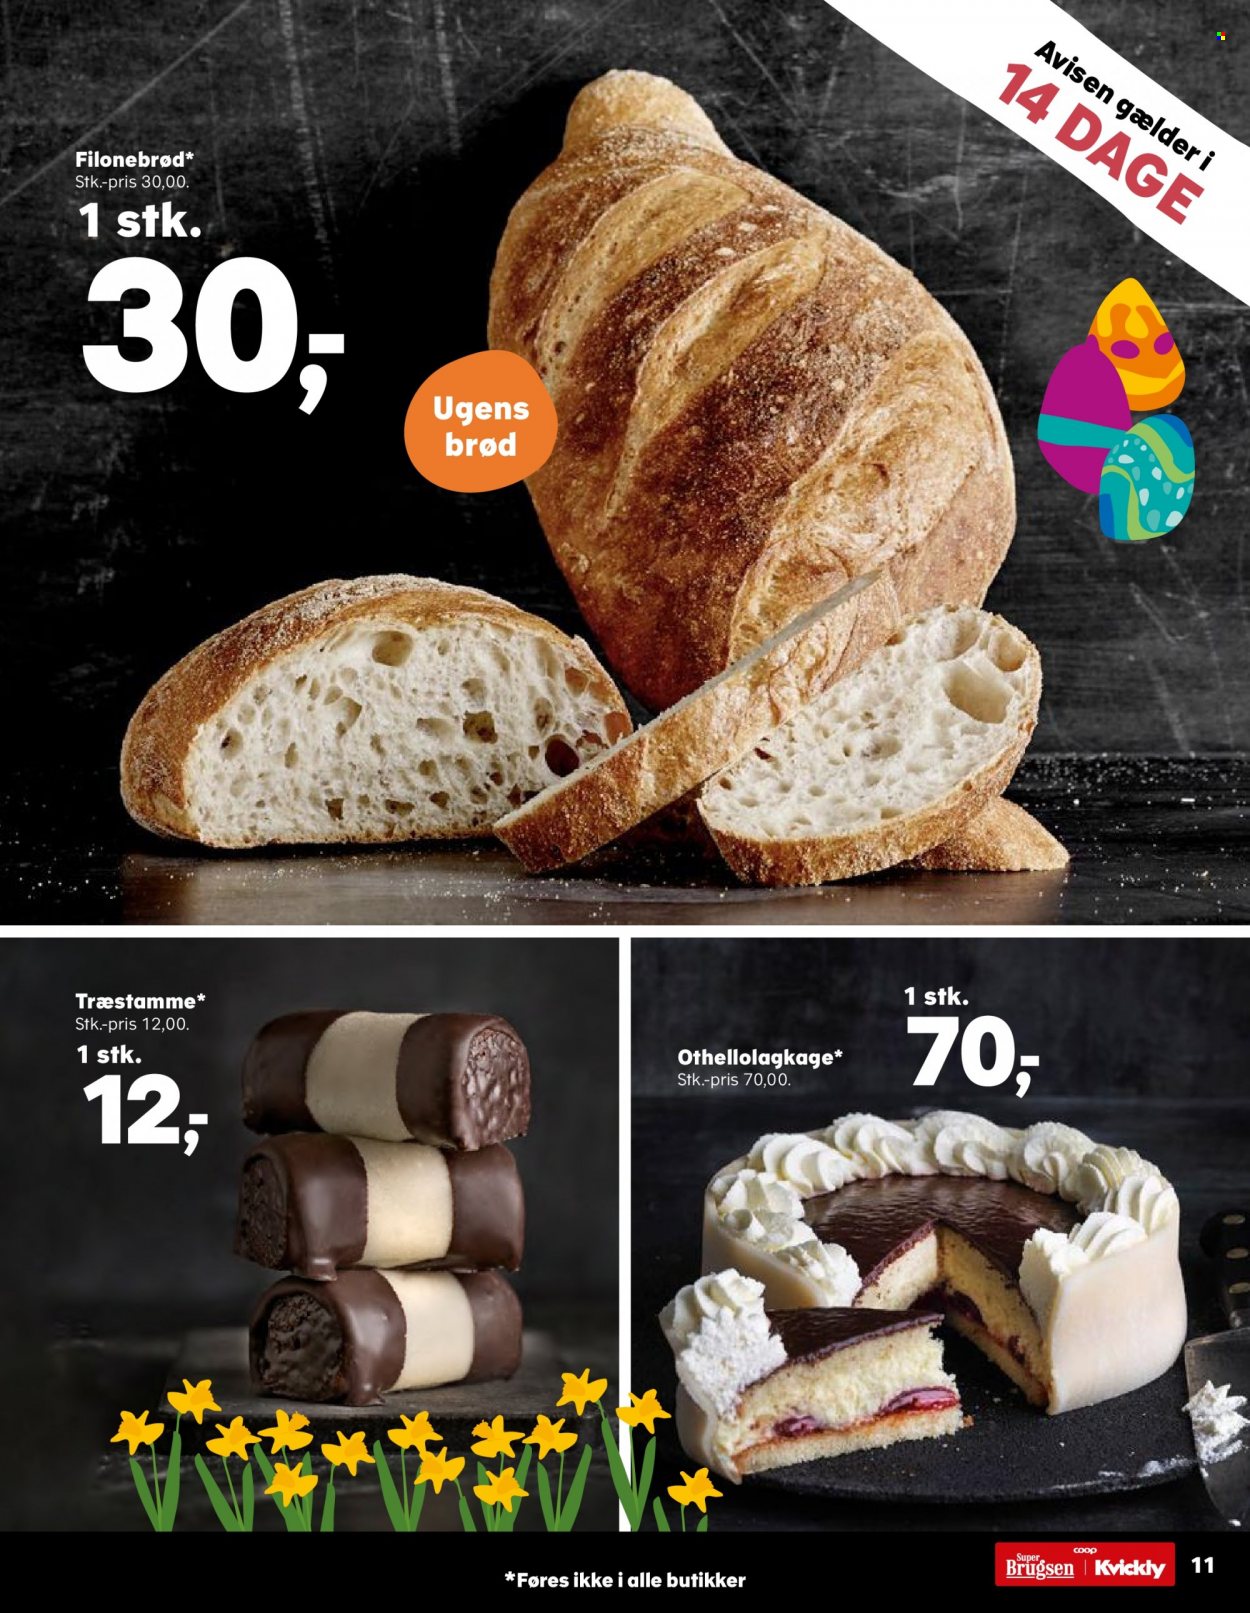 thumbnail - SuperBrugsen tilbud  - 17.3.2023 - 30.3.2023 - tilbudsprodukter - filone brød, brød. Side 12.